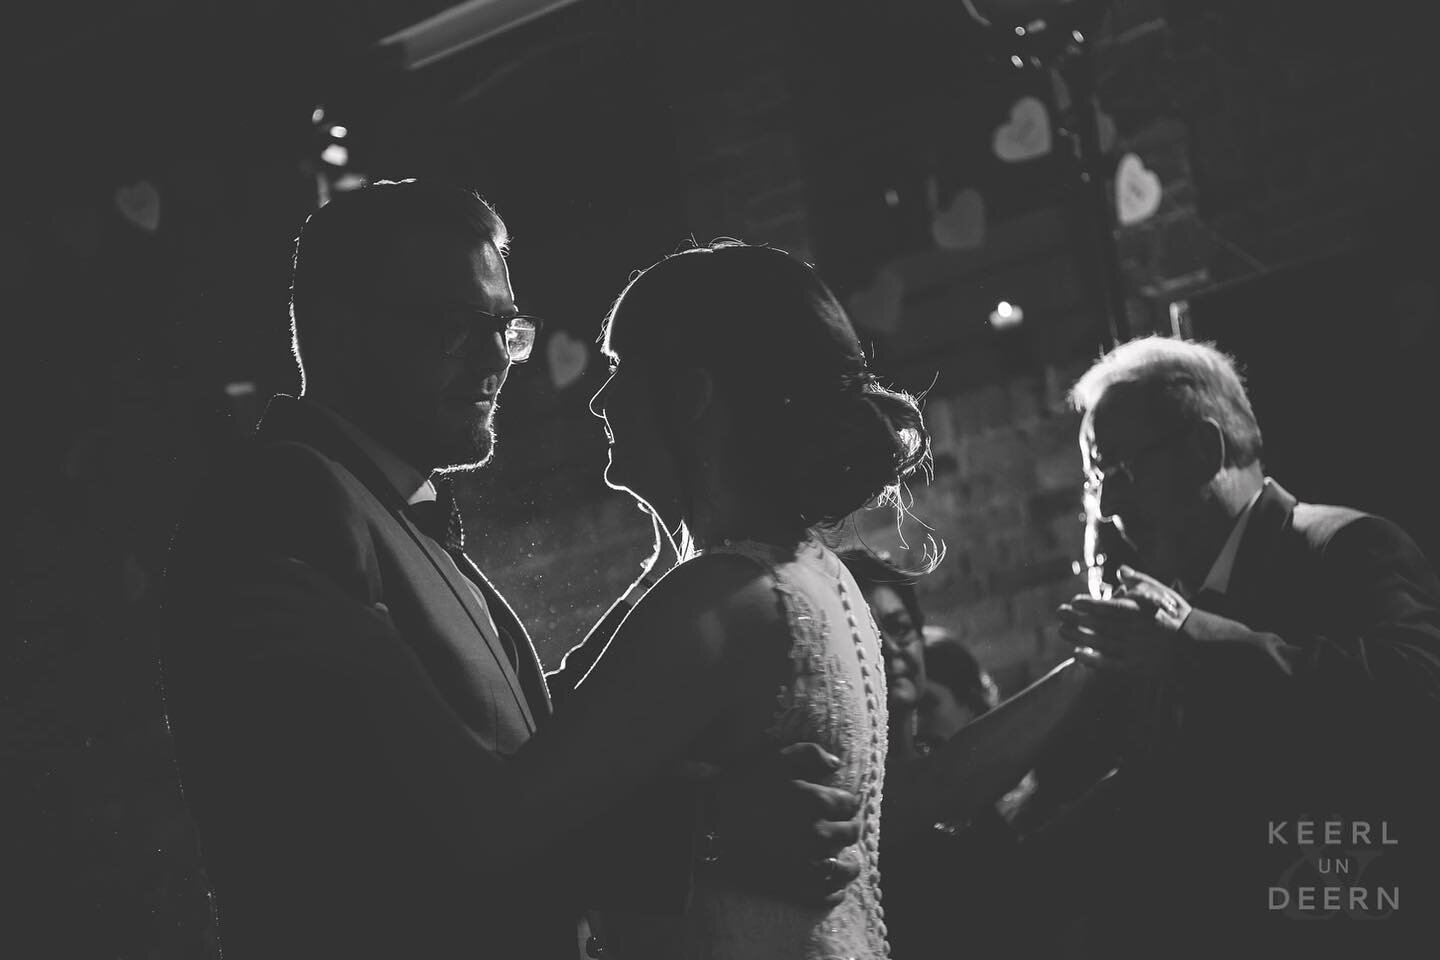 Aus dem Hochzeitsfoto-Archiv, aufgenommen mit einem Blitz als Gegenlicht beim Er&ouml;ffnungstanz&hellip; ❤️ #sch&ouml;nesniedersachsen #nidersachsen #silhouette #bride #groom #hochzeitspaar #niedersachsen #nds #mointag #echtniedersachsen #igersgerma